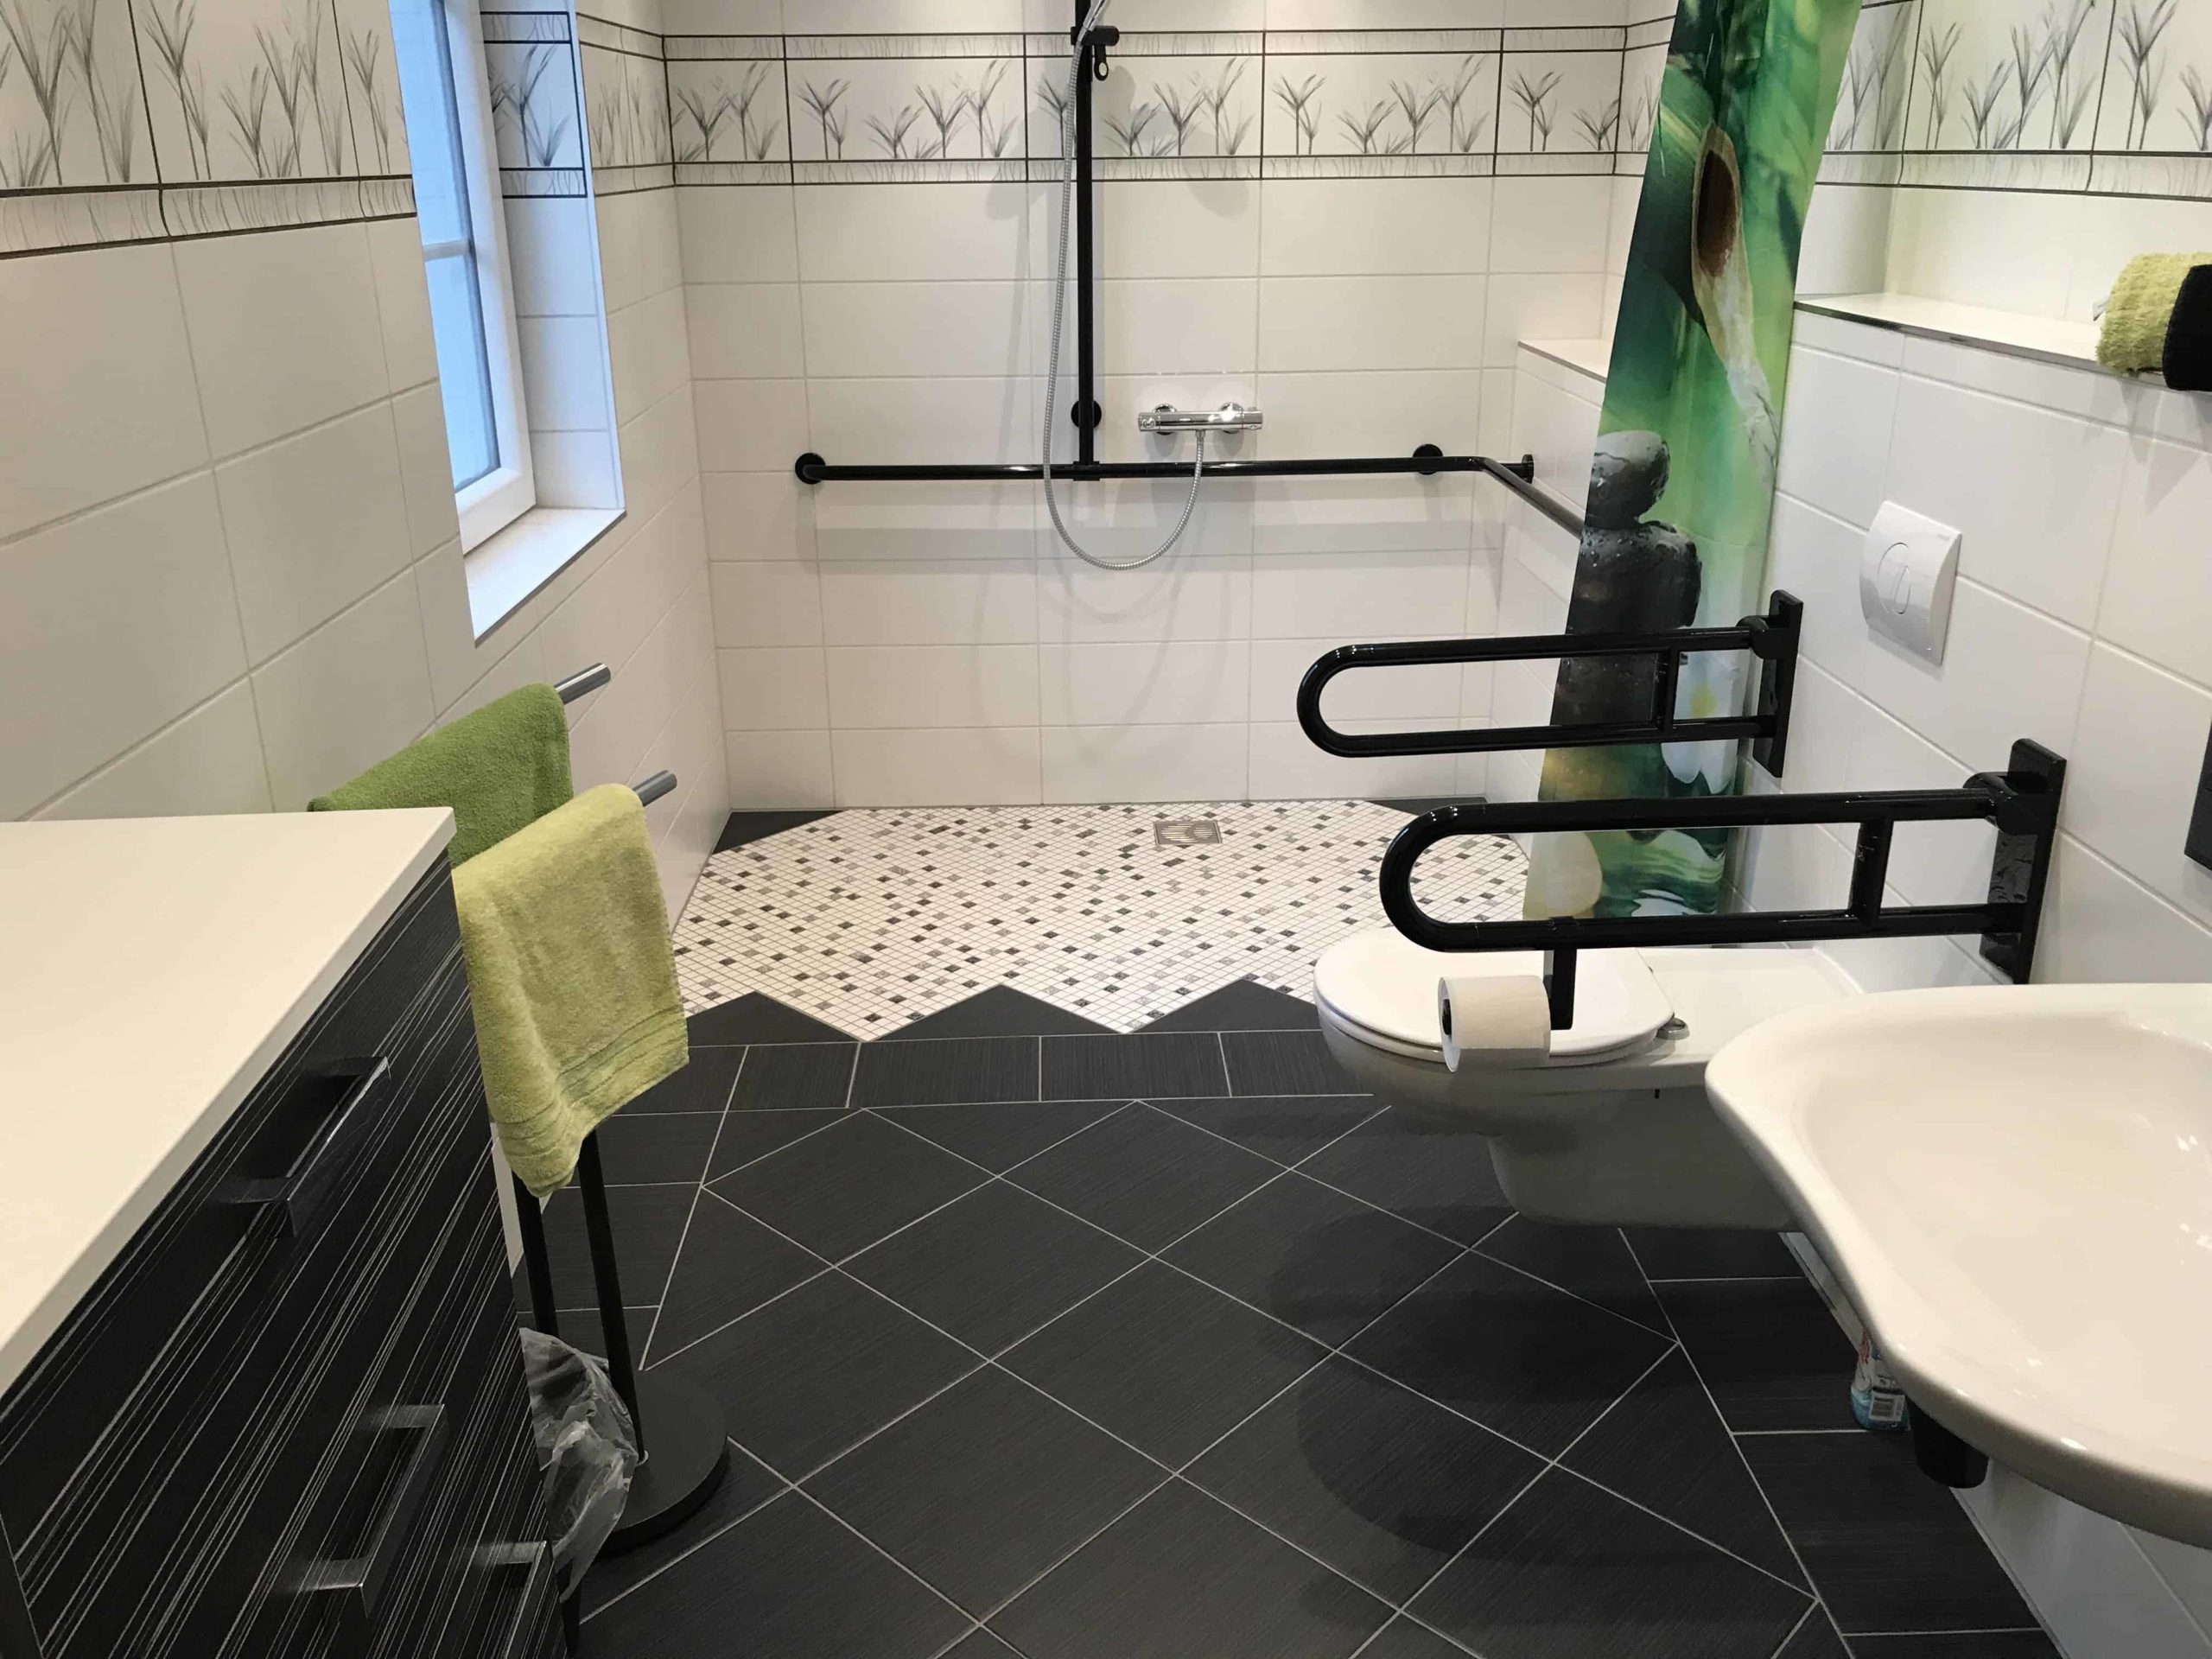 Baño accesible de tonos negro, blanco y verdes. Placa ducha y water con asideros